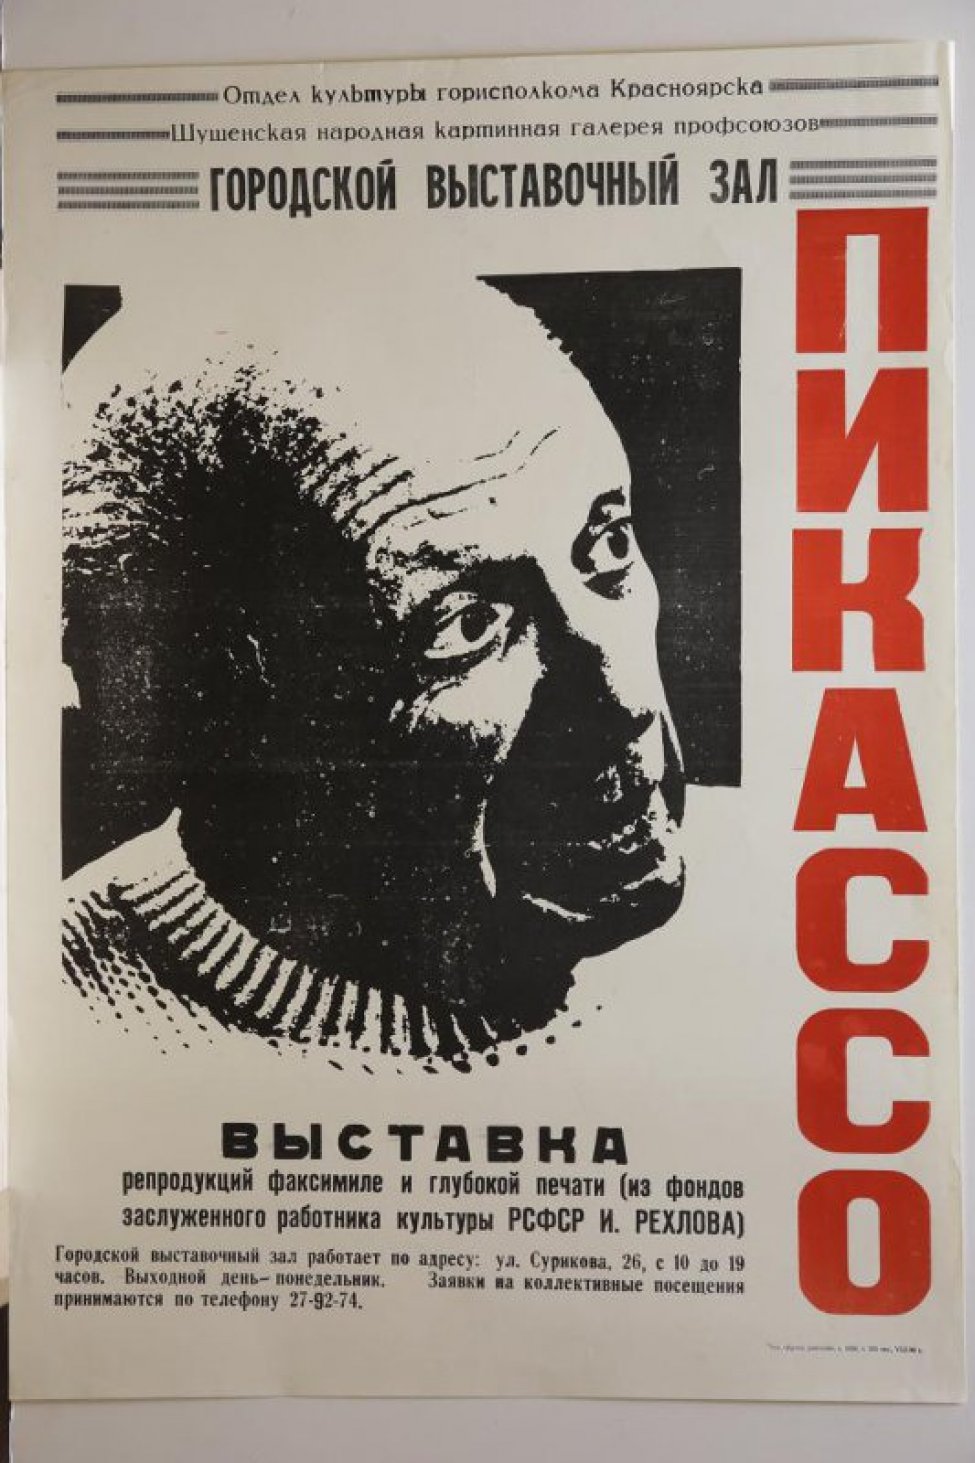 Оплечное изображение в 3/4 повороте художника Пабло Пикассо с приподнятой головой; справа, по вертикали, красным шрифтом: ПИКАССО.